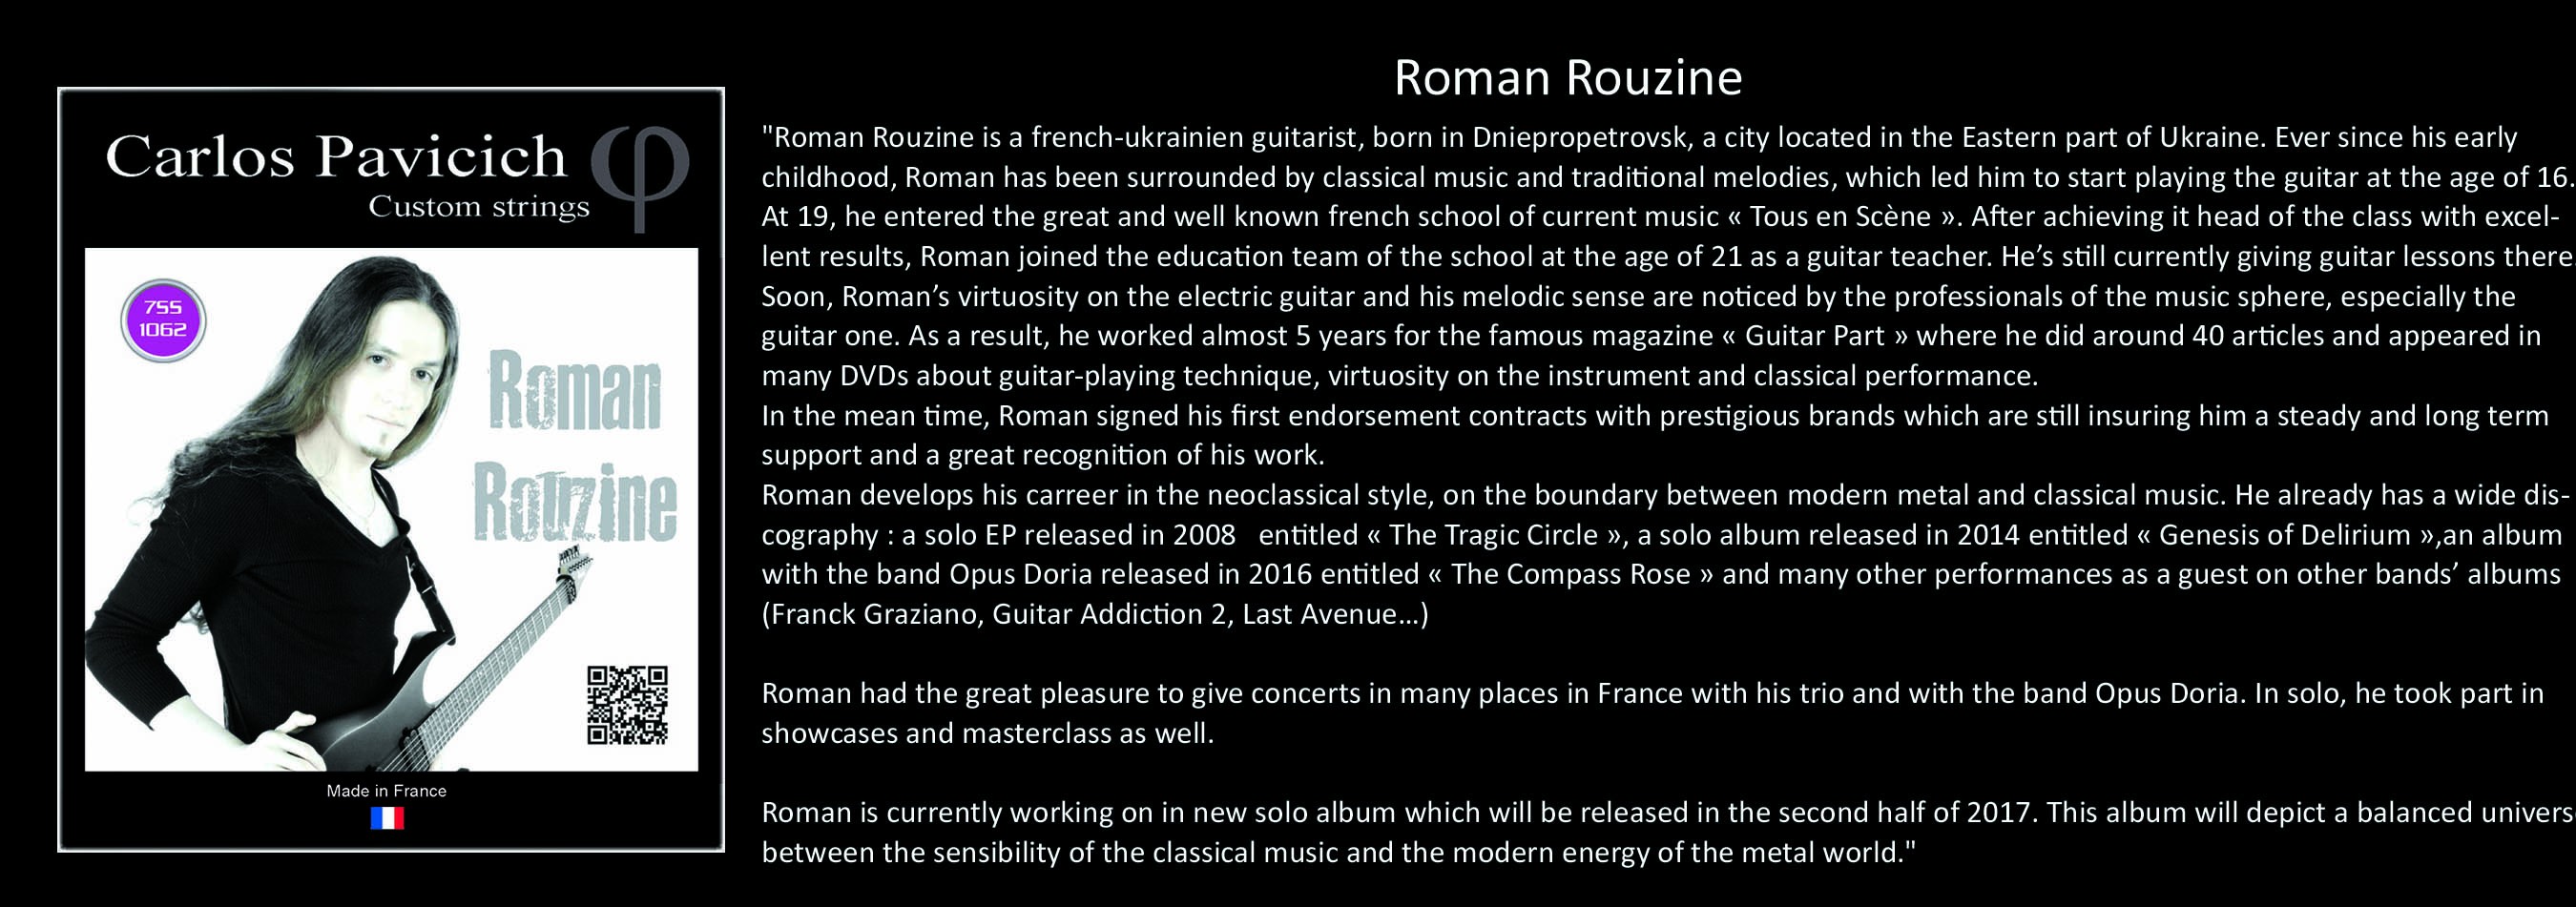 Roman Rouzine